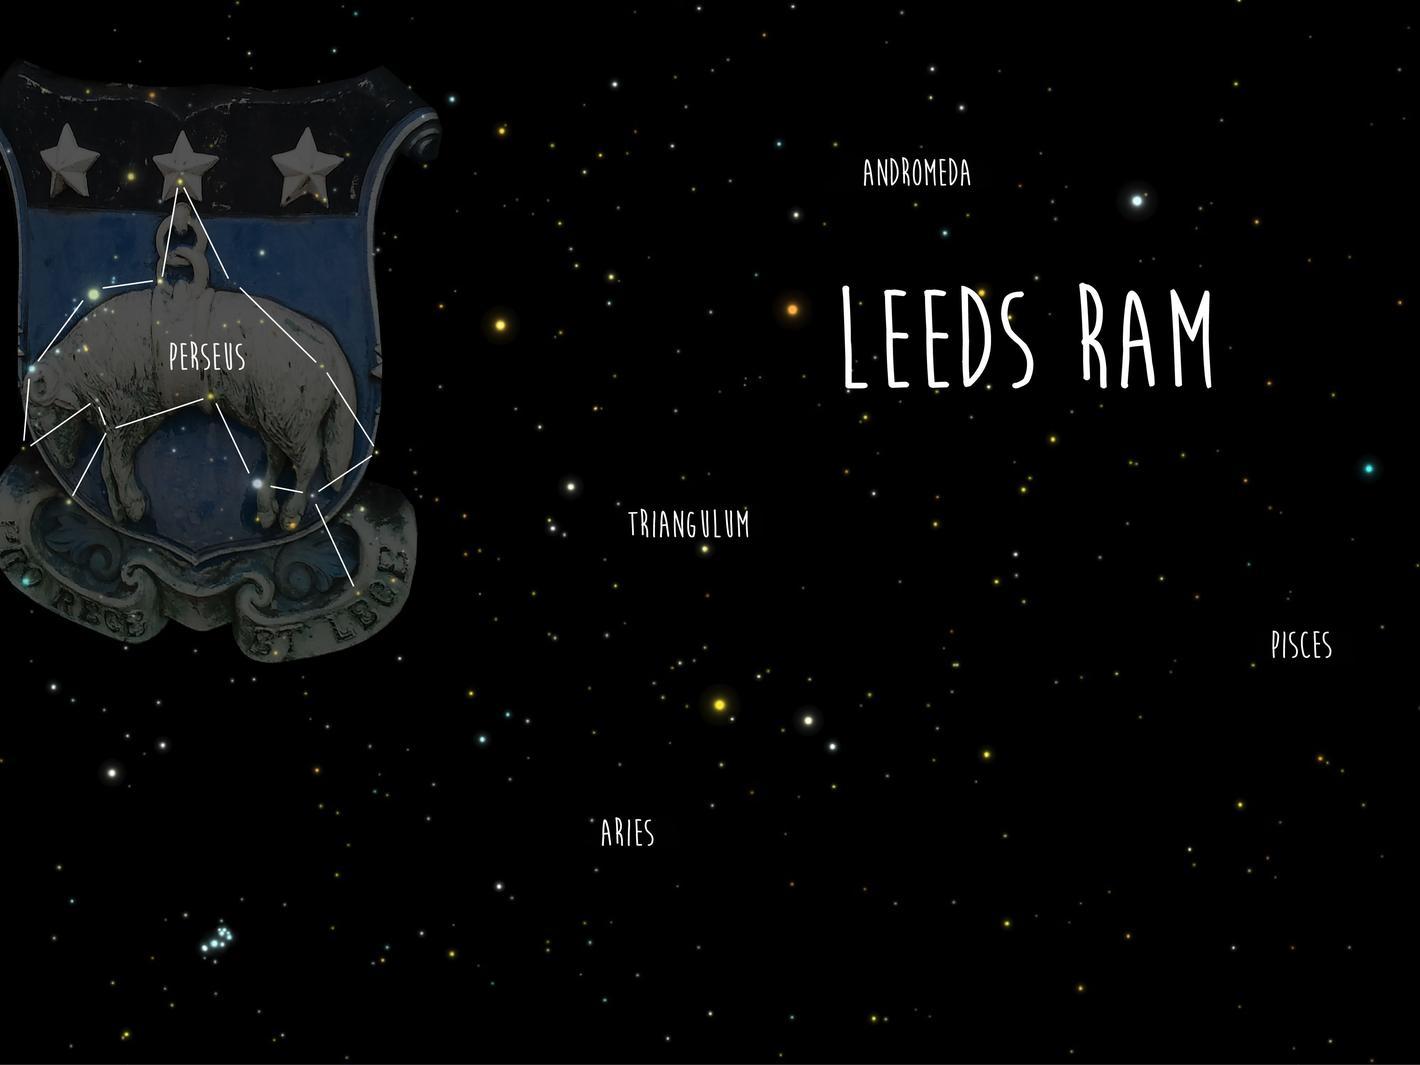 Leeds Ram